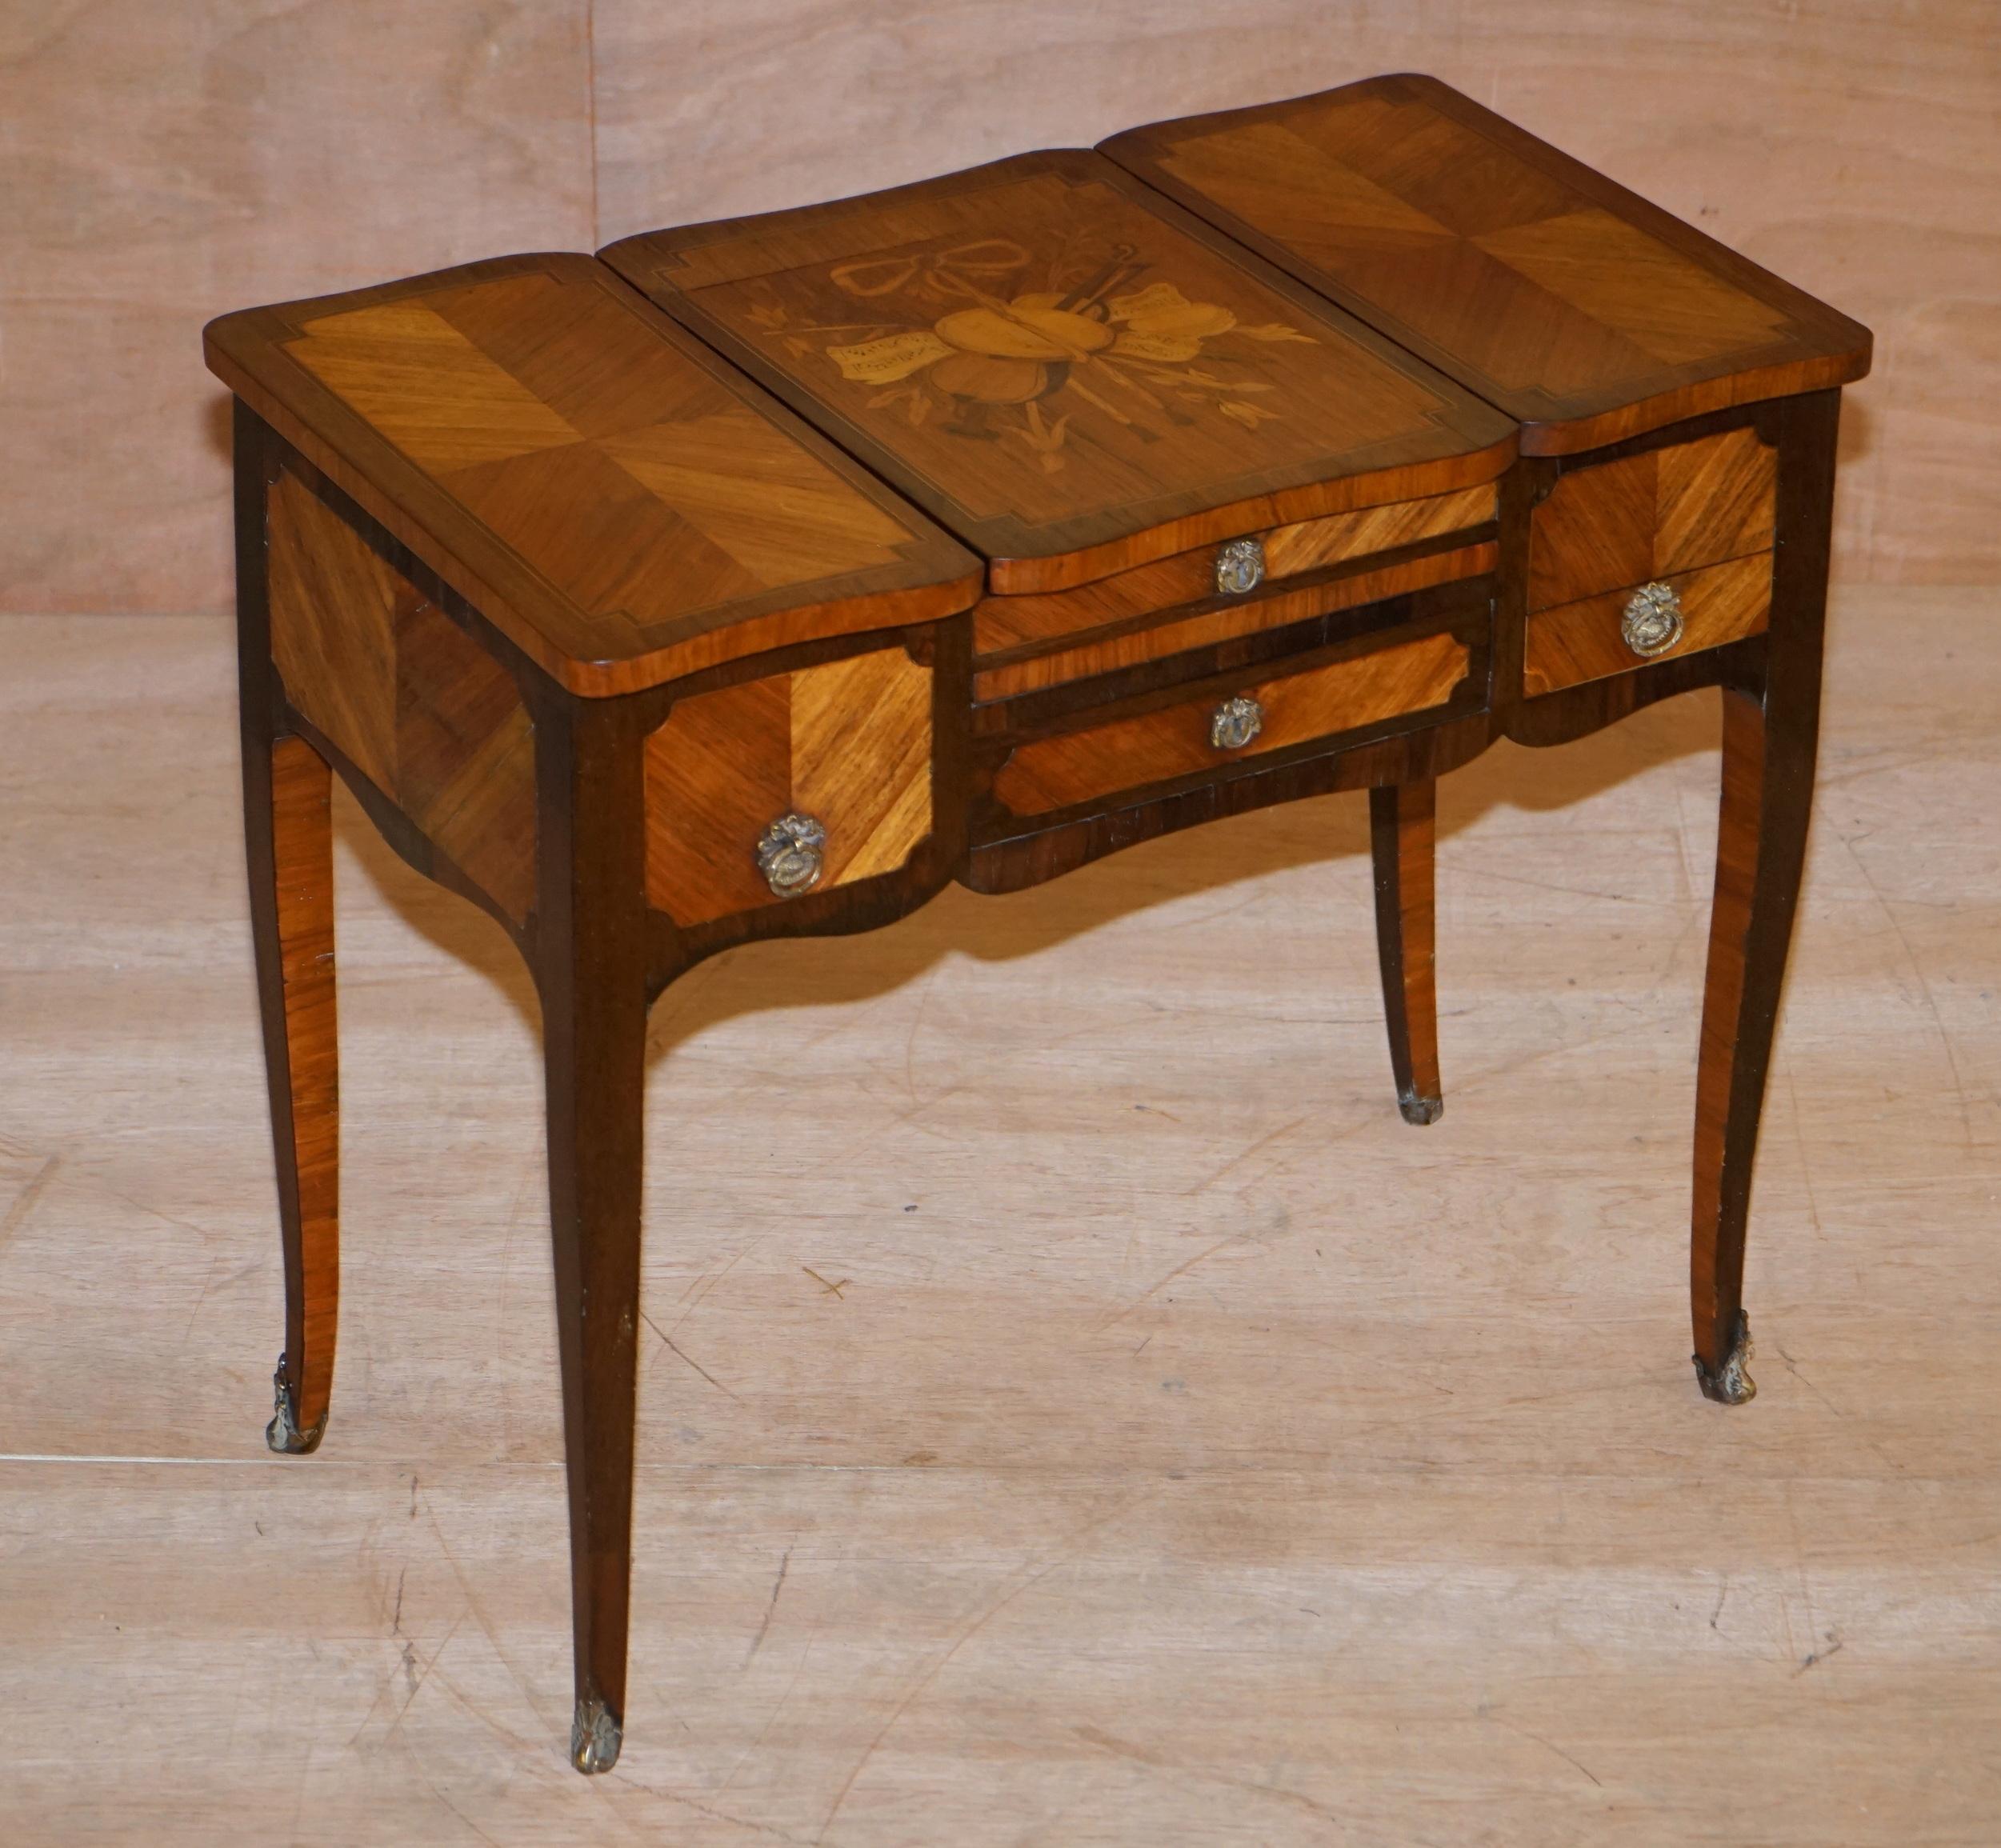 Wir freuen uns, diese exquisite, vollständig restaurierte Alfred Beurdeley zugeschriebene französische Louis XV Kingwood Coiffeuse aus dem 19

Dies ist das beste Beispiel für einen Coiffeuse-Tisch, das ich je gesehen habe. Die Intarsienarbeit kann